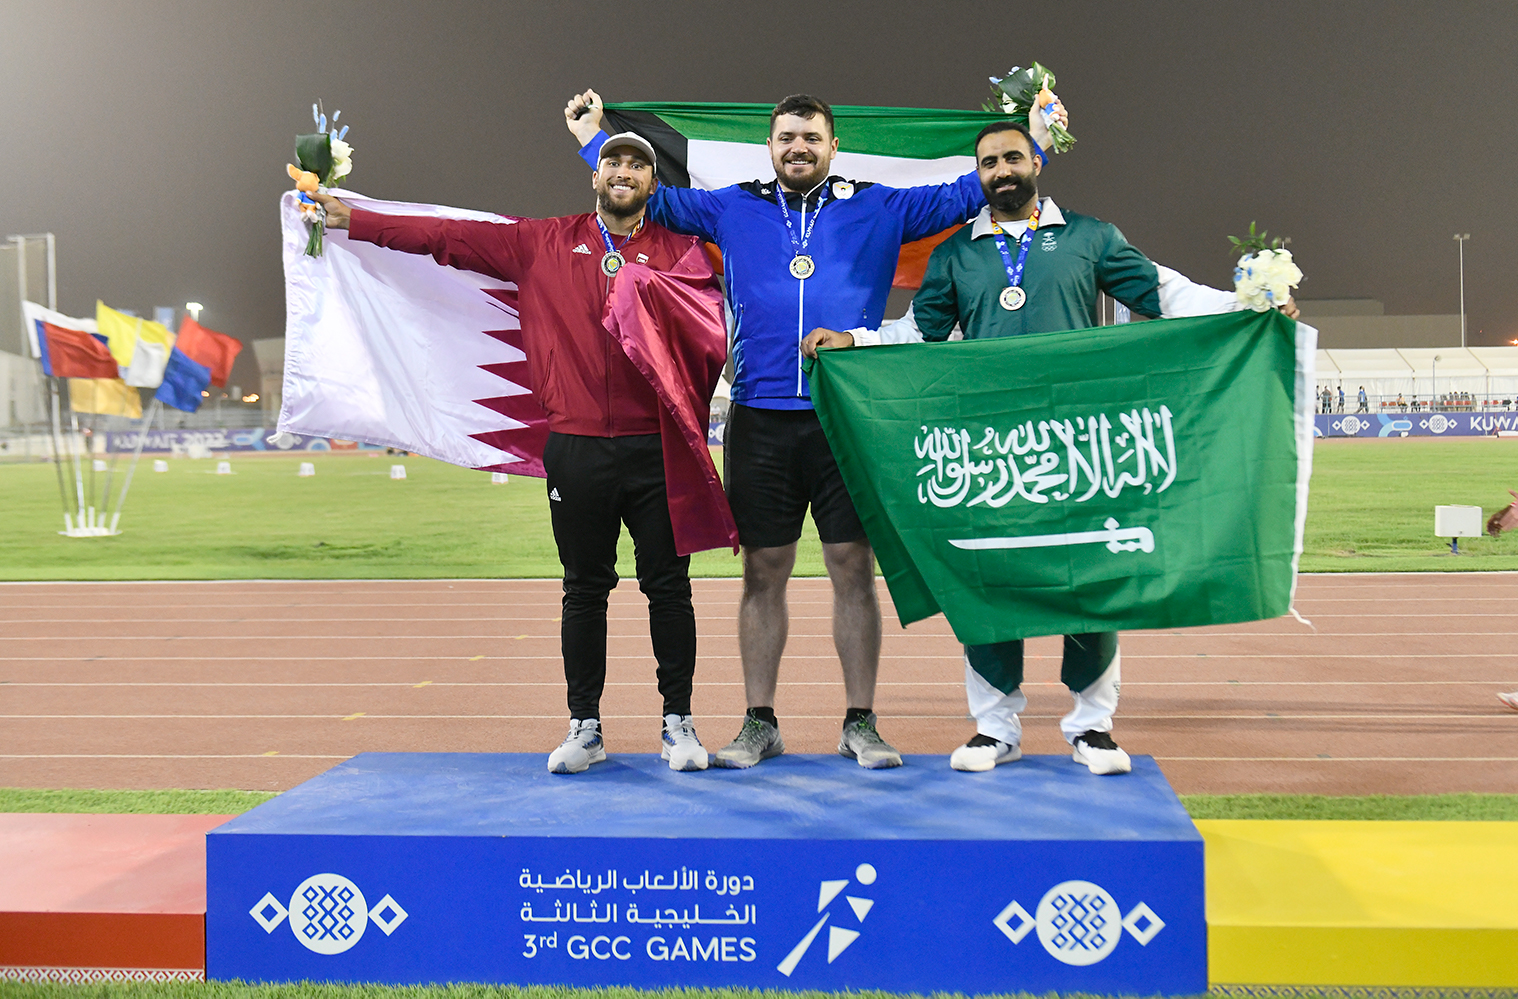 لاعب منتخب الكويت لألعاب القوى عيسى الزنكوي يحقق الميدالية الذهبية الثانية للكويت